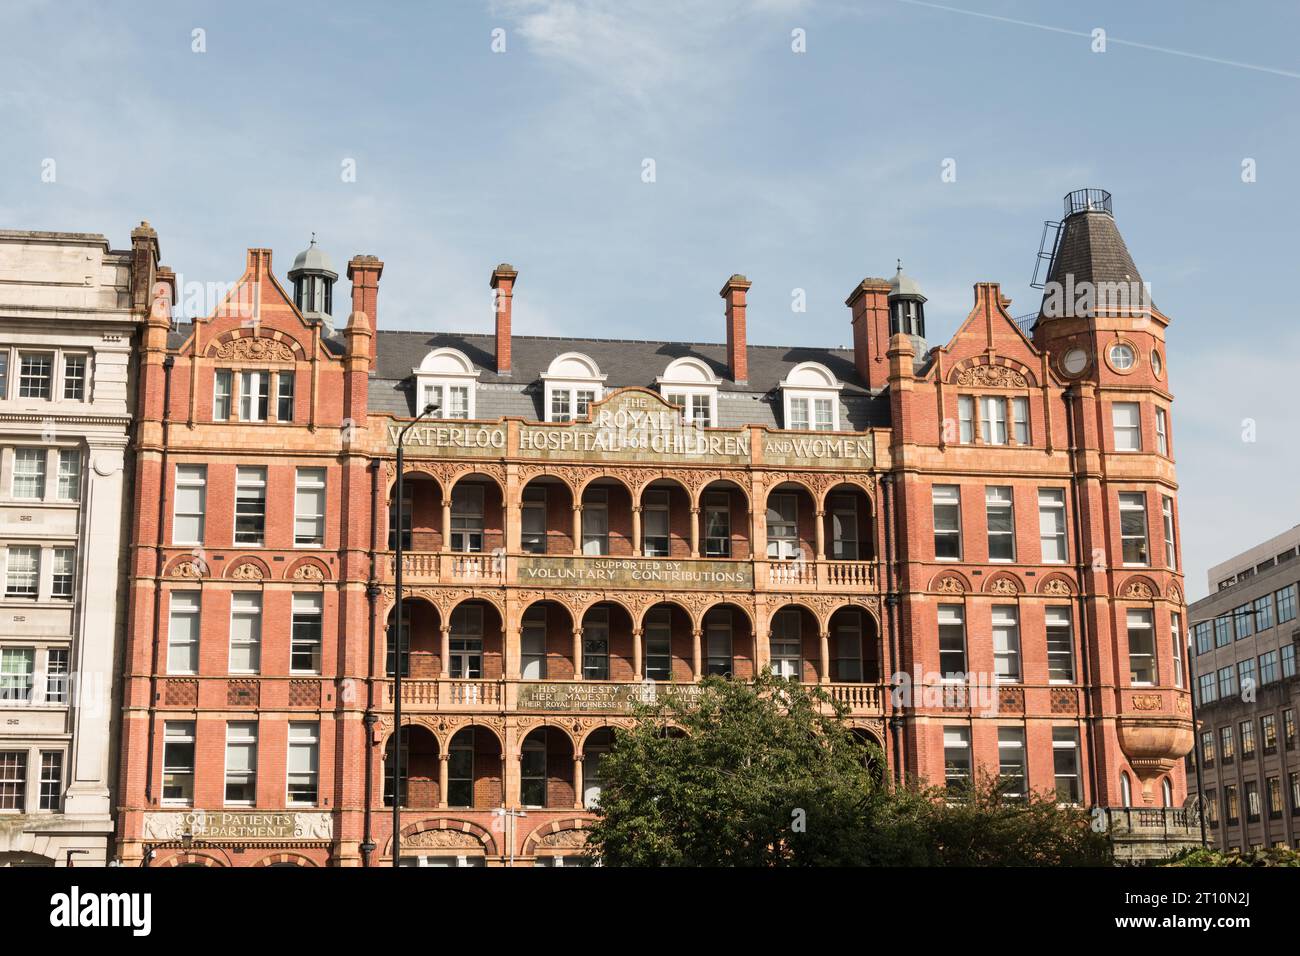 Das Äußere des ehemaligen Royal Waterloo Hospital for Children and Women (heute Teil der University of Notre Dame) Lambeth, London SE1, England, Großbritannien Stockfoto